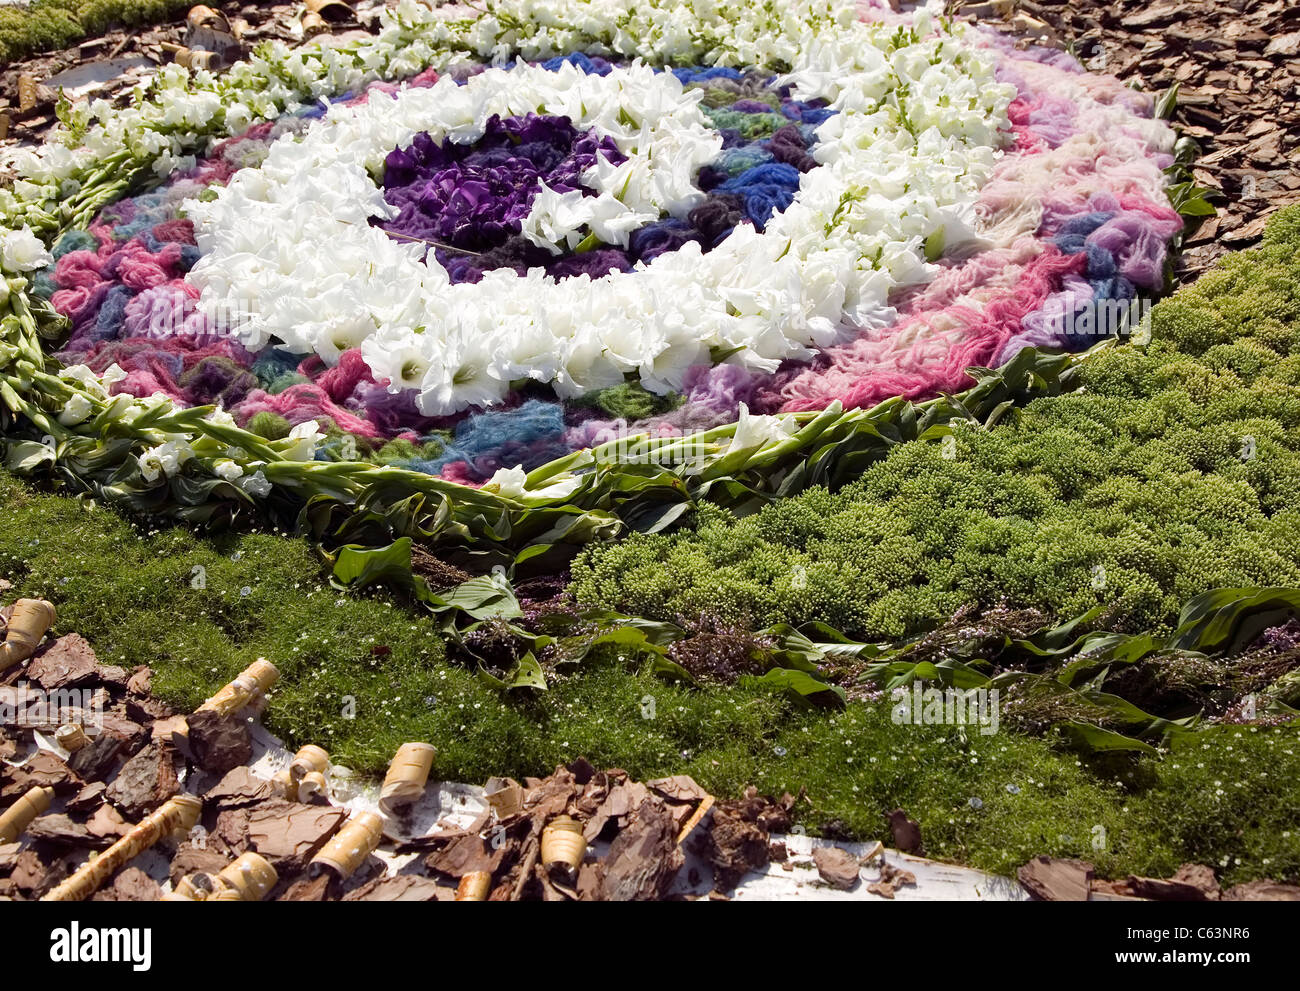 Bonito remolino está hecha de blanco y flores violetas con plantas verdes alrededor Foto de stock